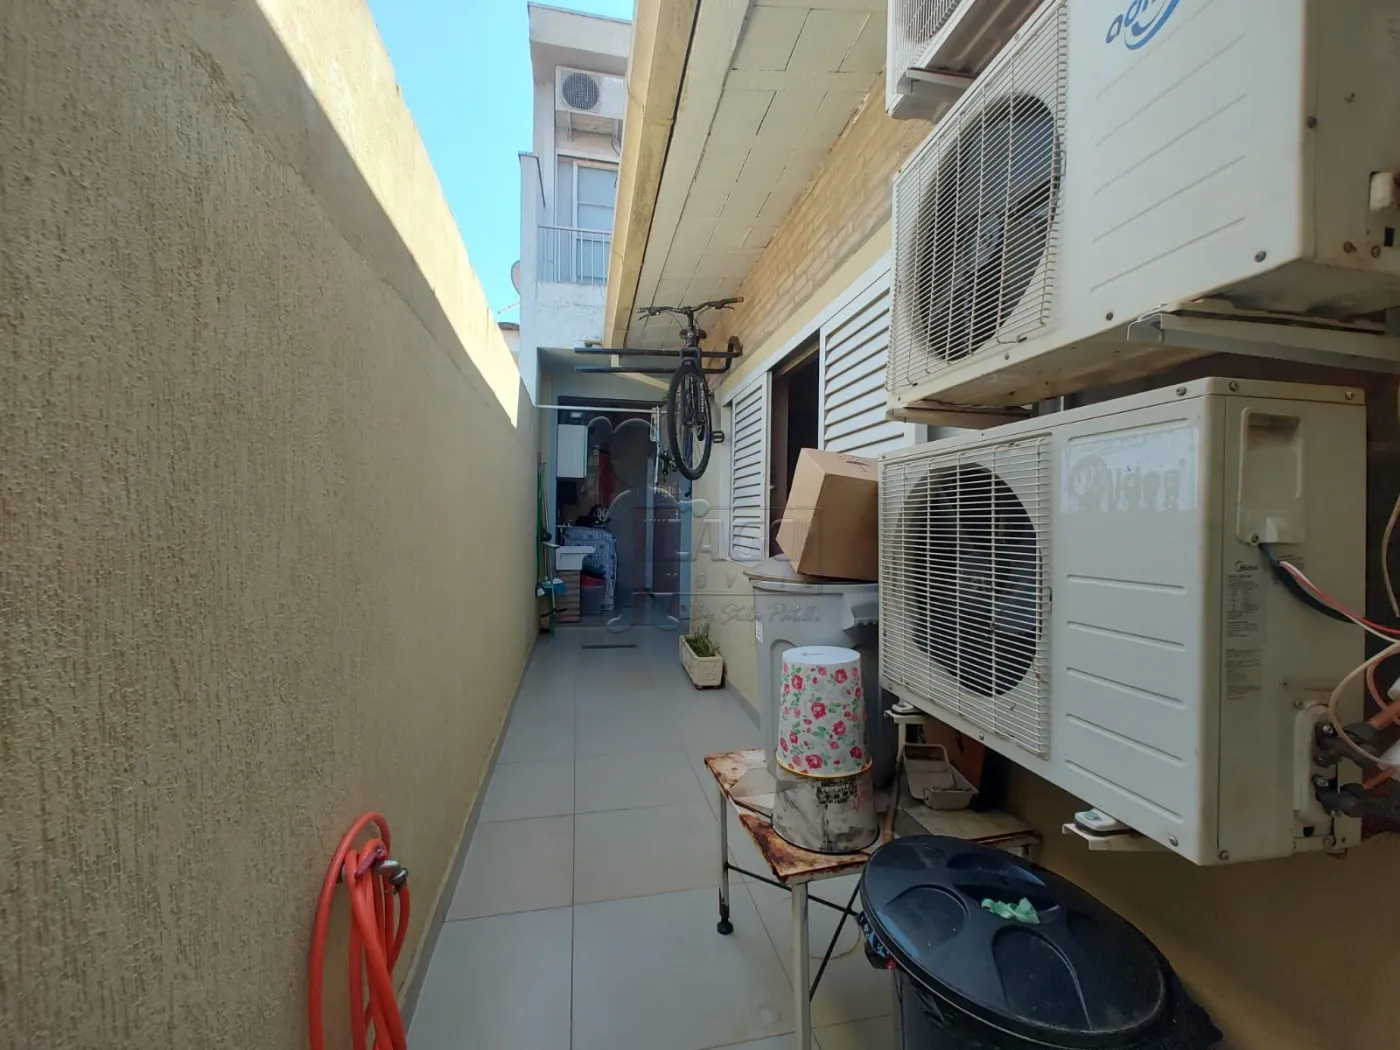 Alugar Casas / Padrão em Ribeirão Preto R$ 1.000,00 - Foto 18